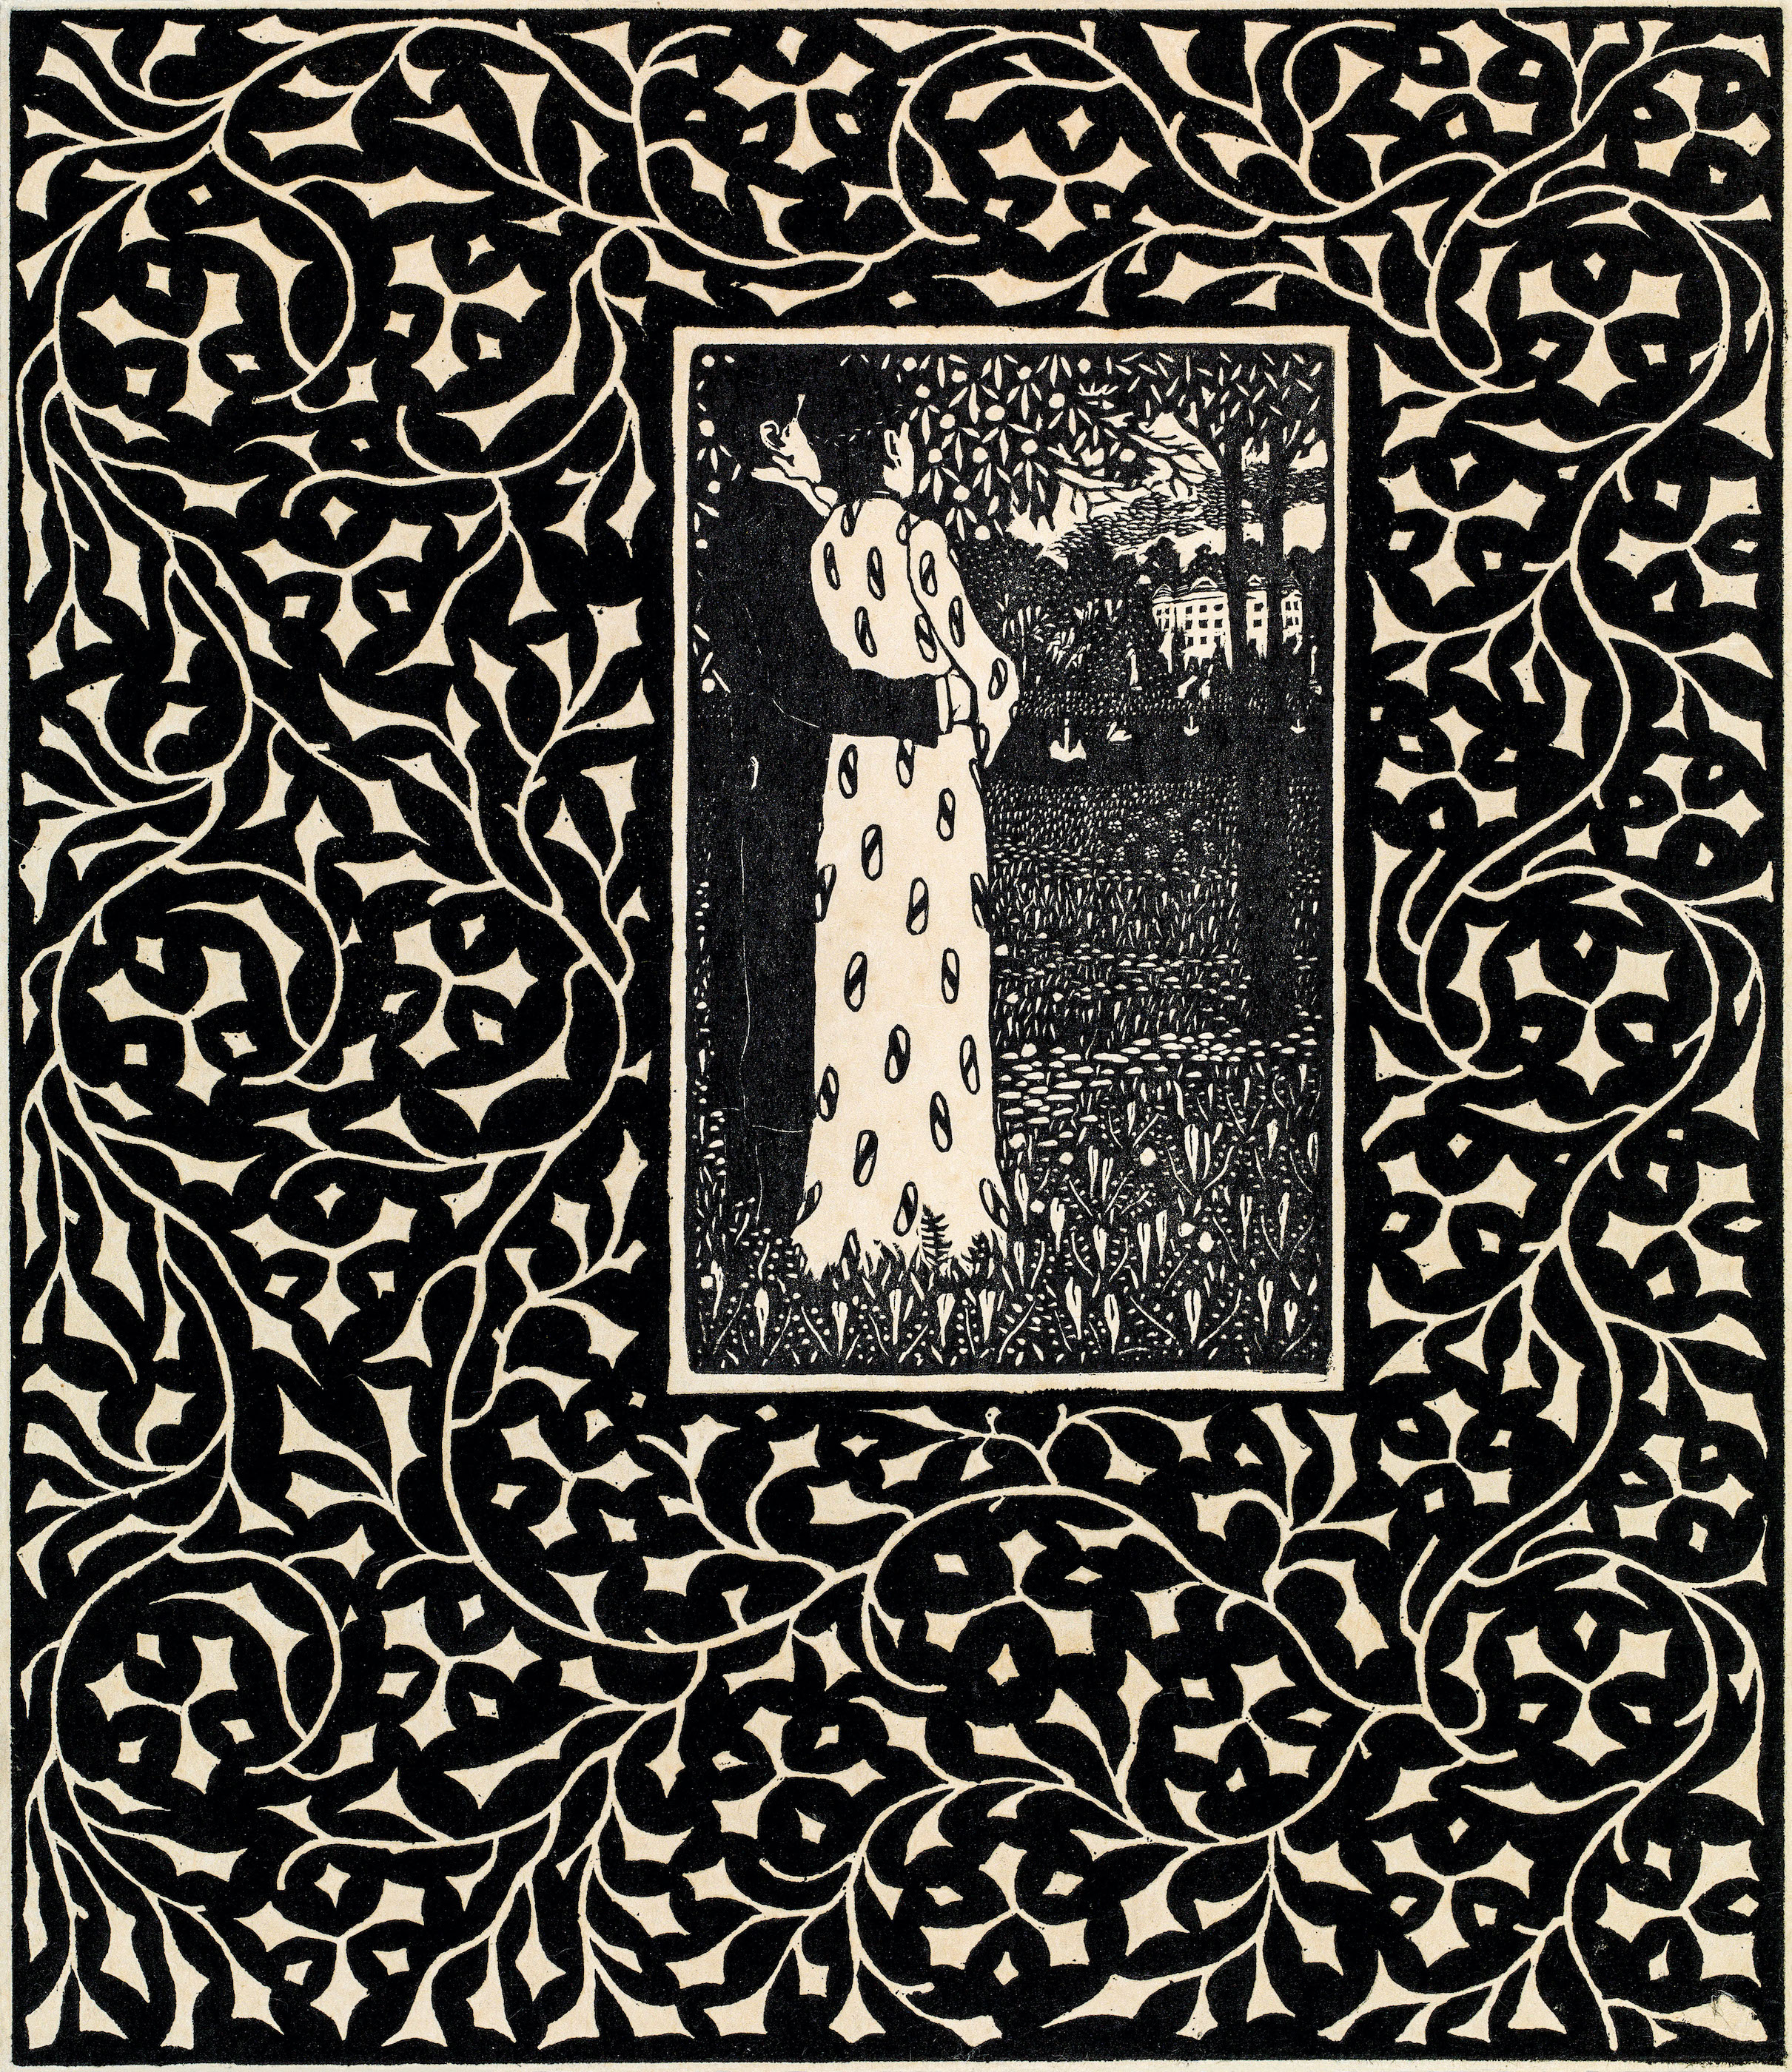 四季 1906 年 by Carl Krenek - 1906 年 - 26.6 x 22.1 釐米 